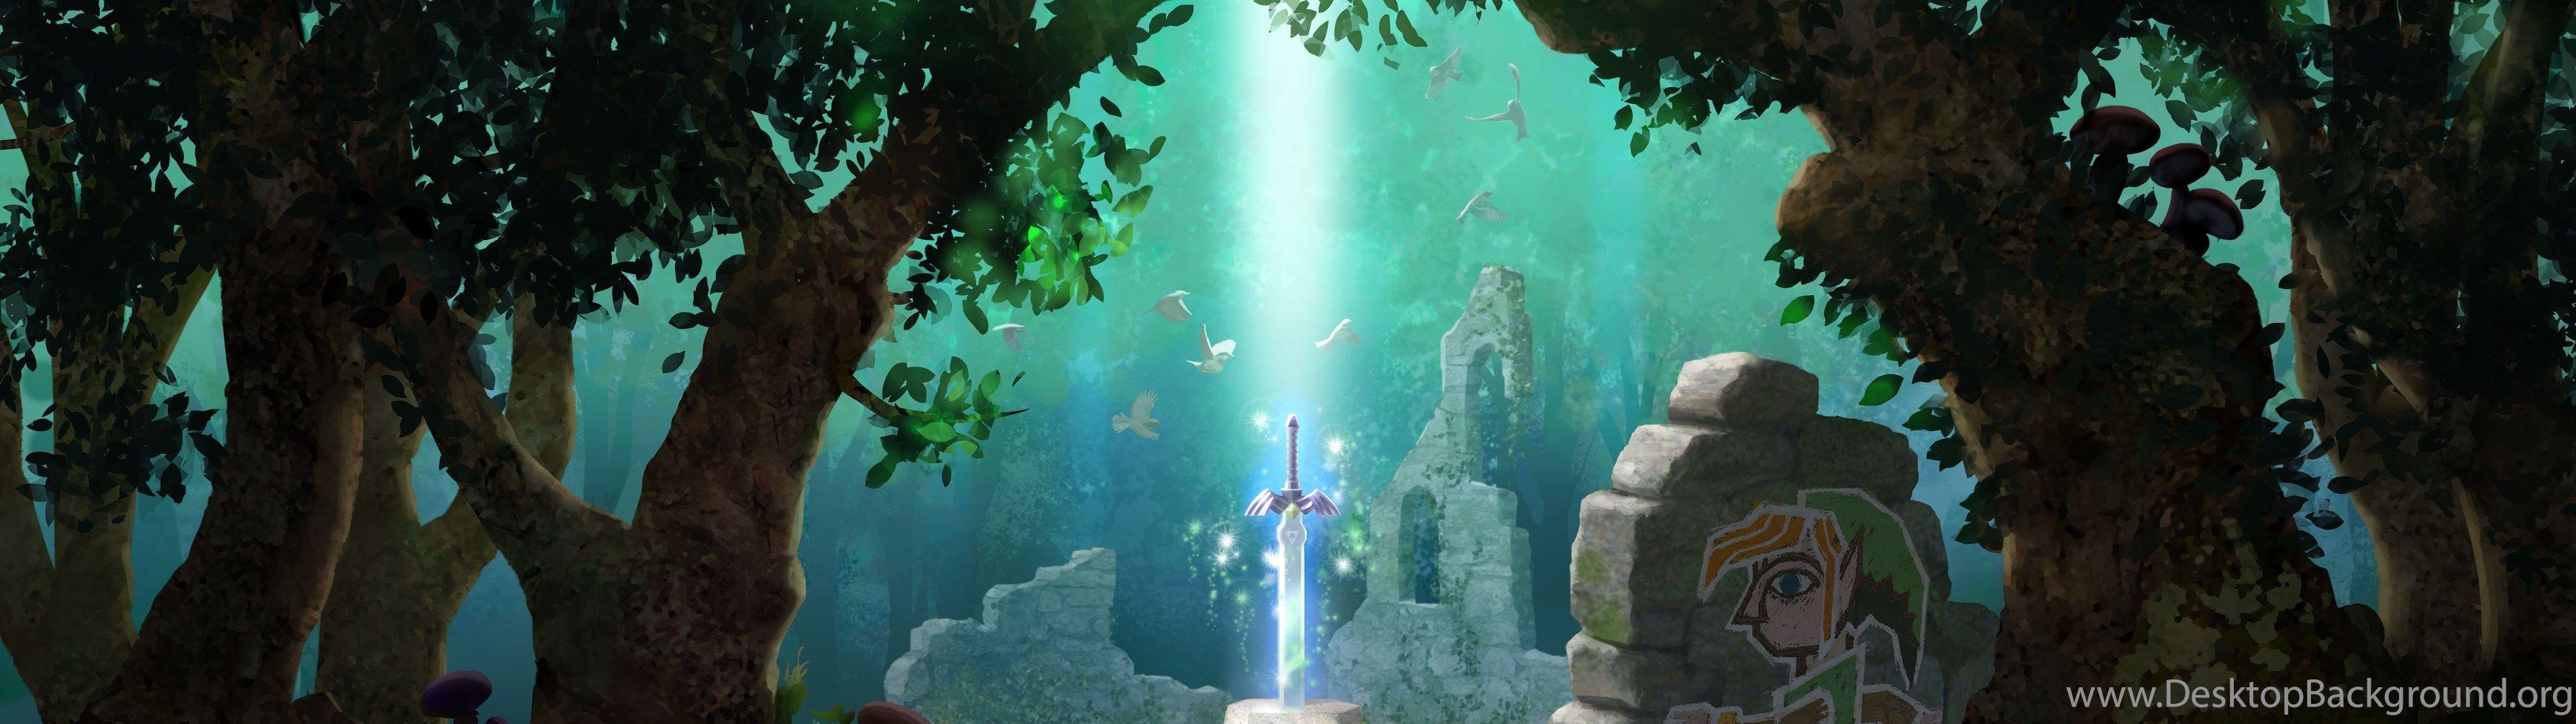 Legend of Zelda Dual Screen Wallpapers - Top Free Legend of Zelda Dual